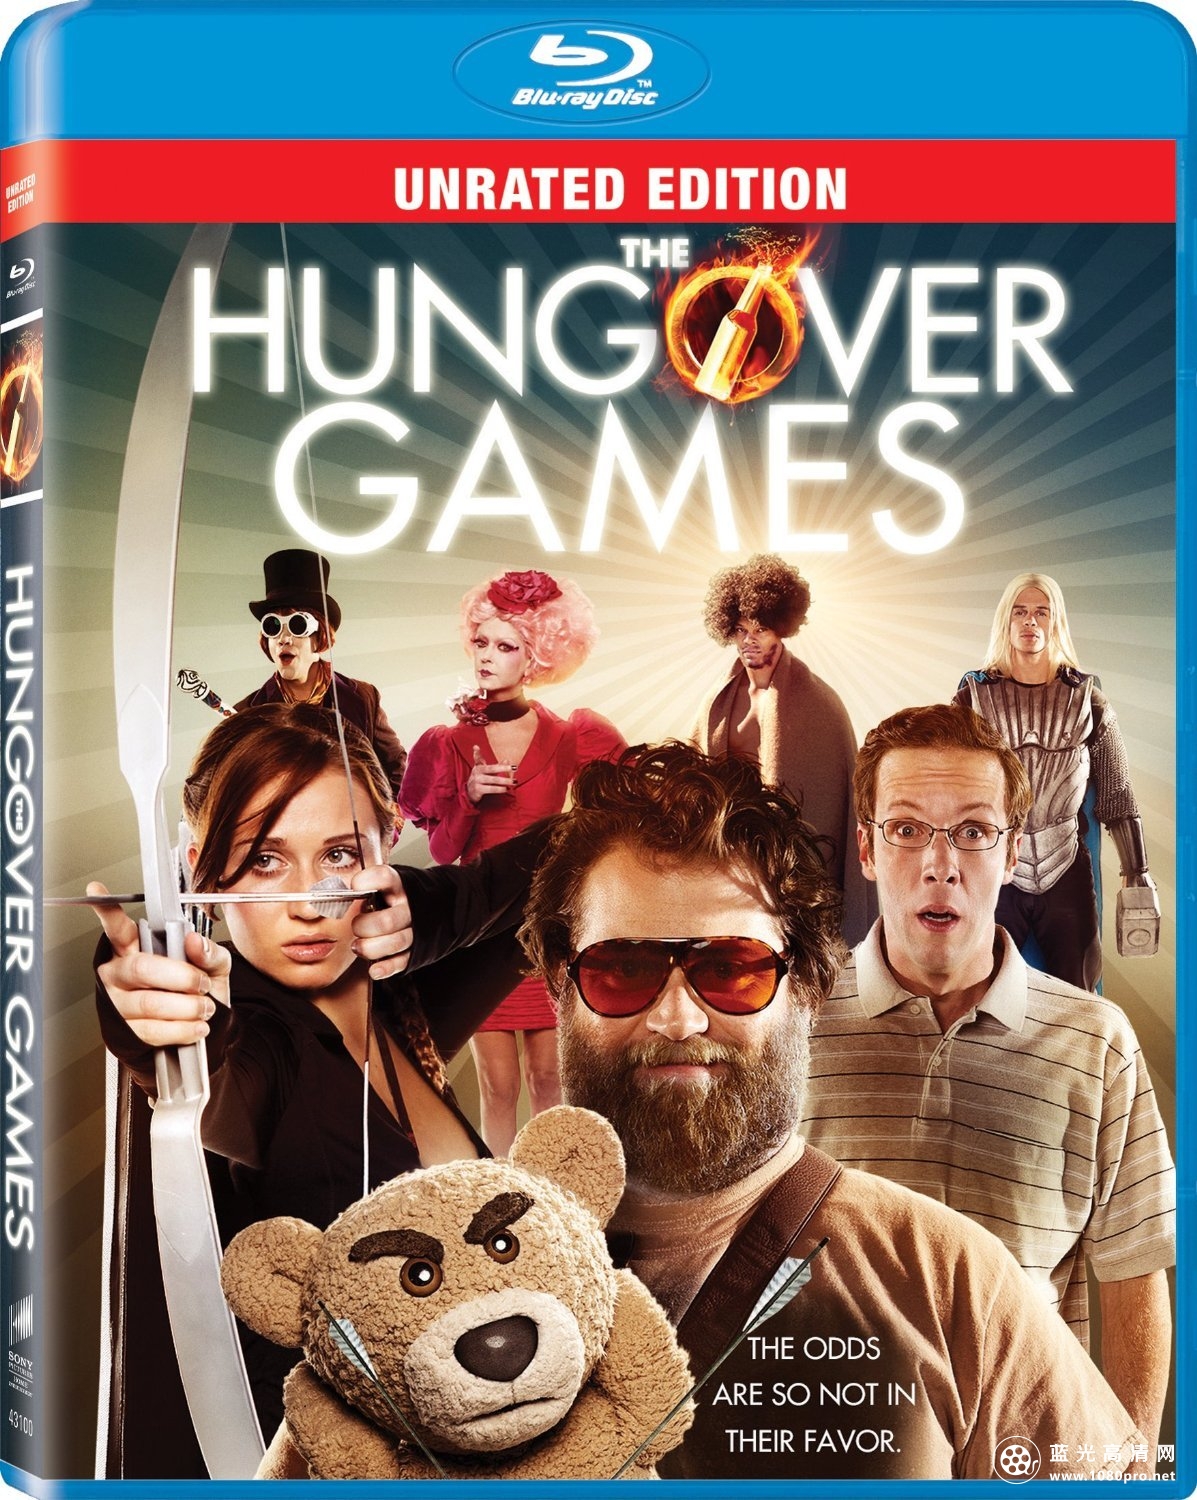 醉饿游戏(未分级版) The.Hungover.Games.2014.UNRATED.720p.BluRay.DTS.x264-PublicHD 3.98GB-1.jpg